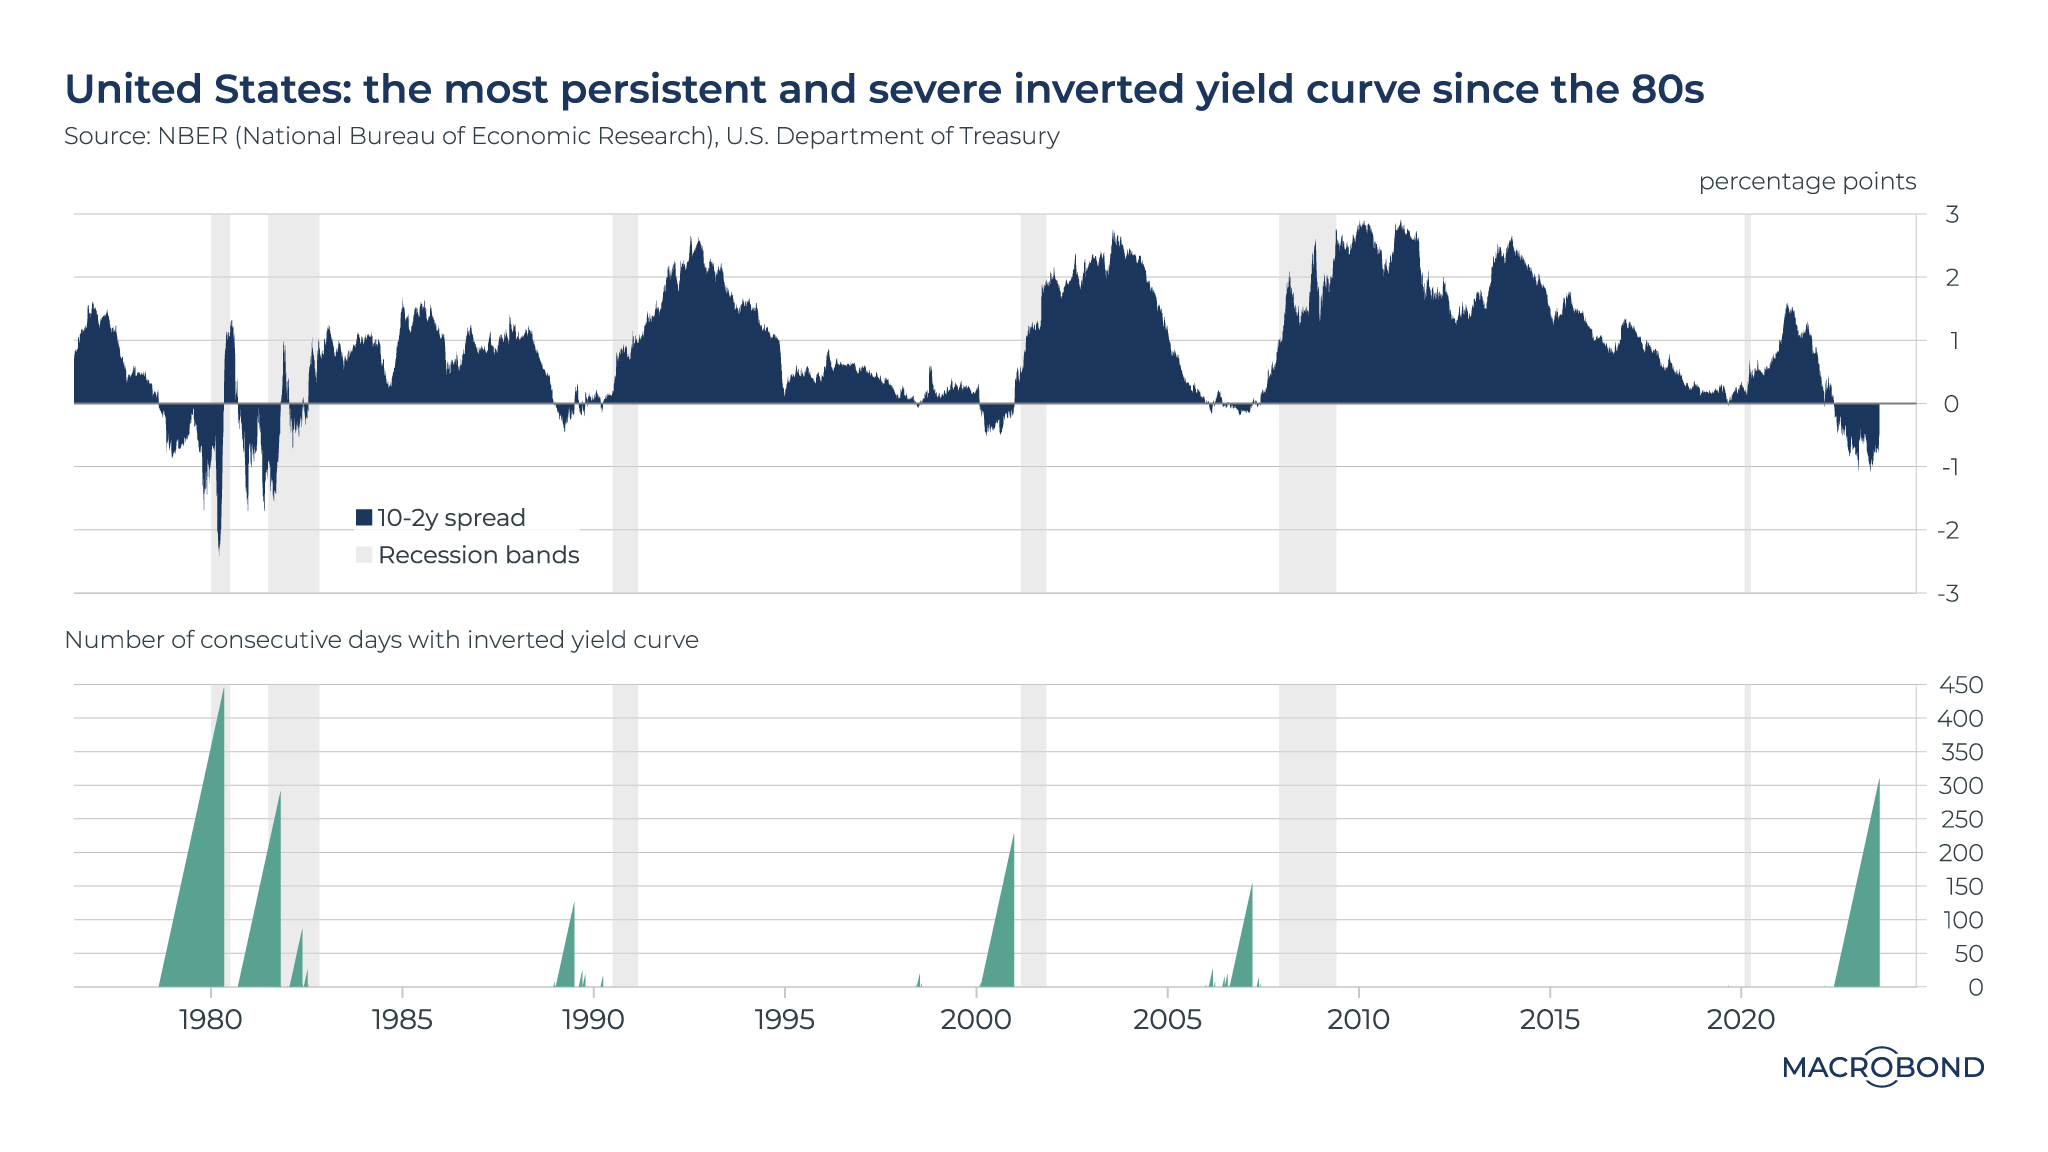 La mayor permanencia de la inversión de la curva desde que Volcker era presidente de la FED